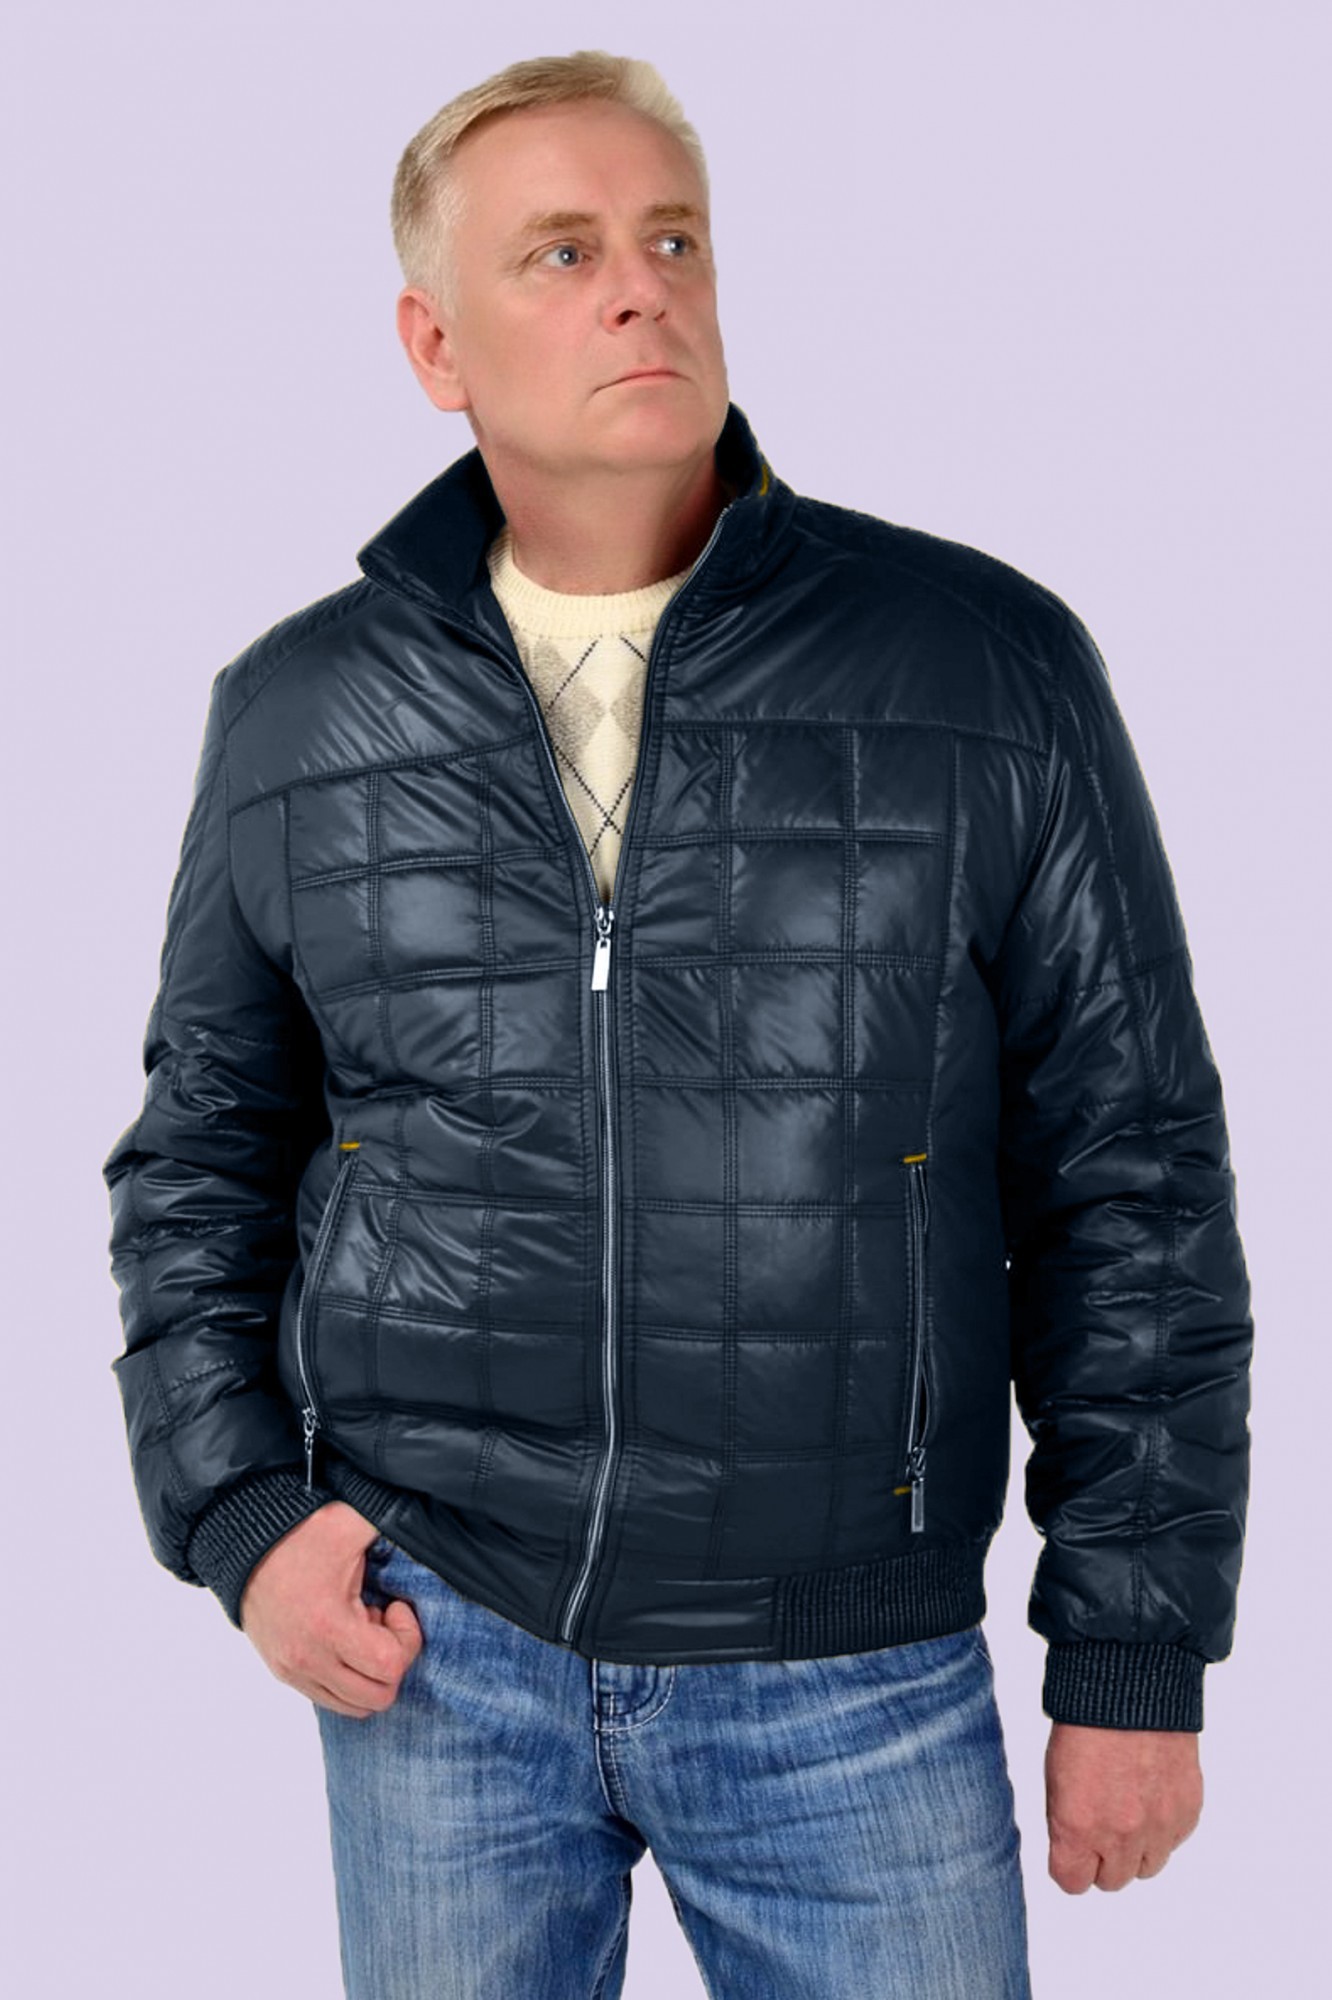 Купить куртку мужскую 64 размер. Куртка мужская Dutymen размер 60-62 зима. Куртка мужская Бизон 64 размер. Куртка демисезонная мужская. Модные мужские куртки.